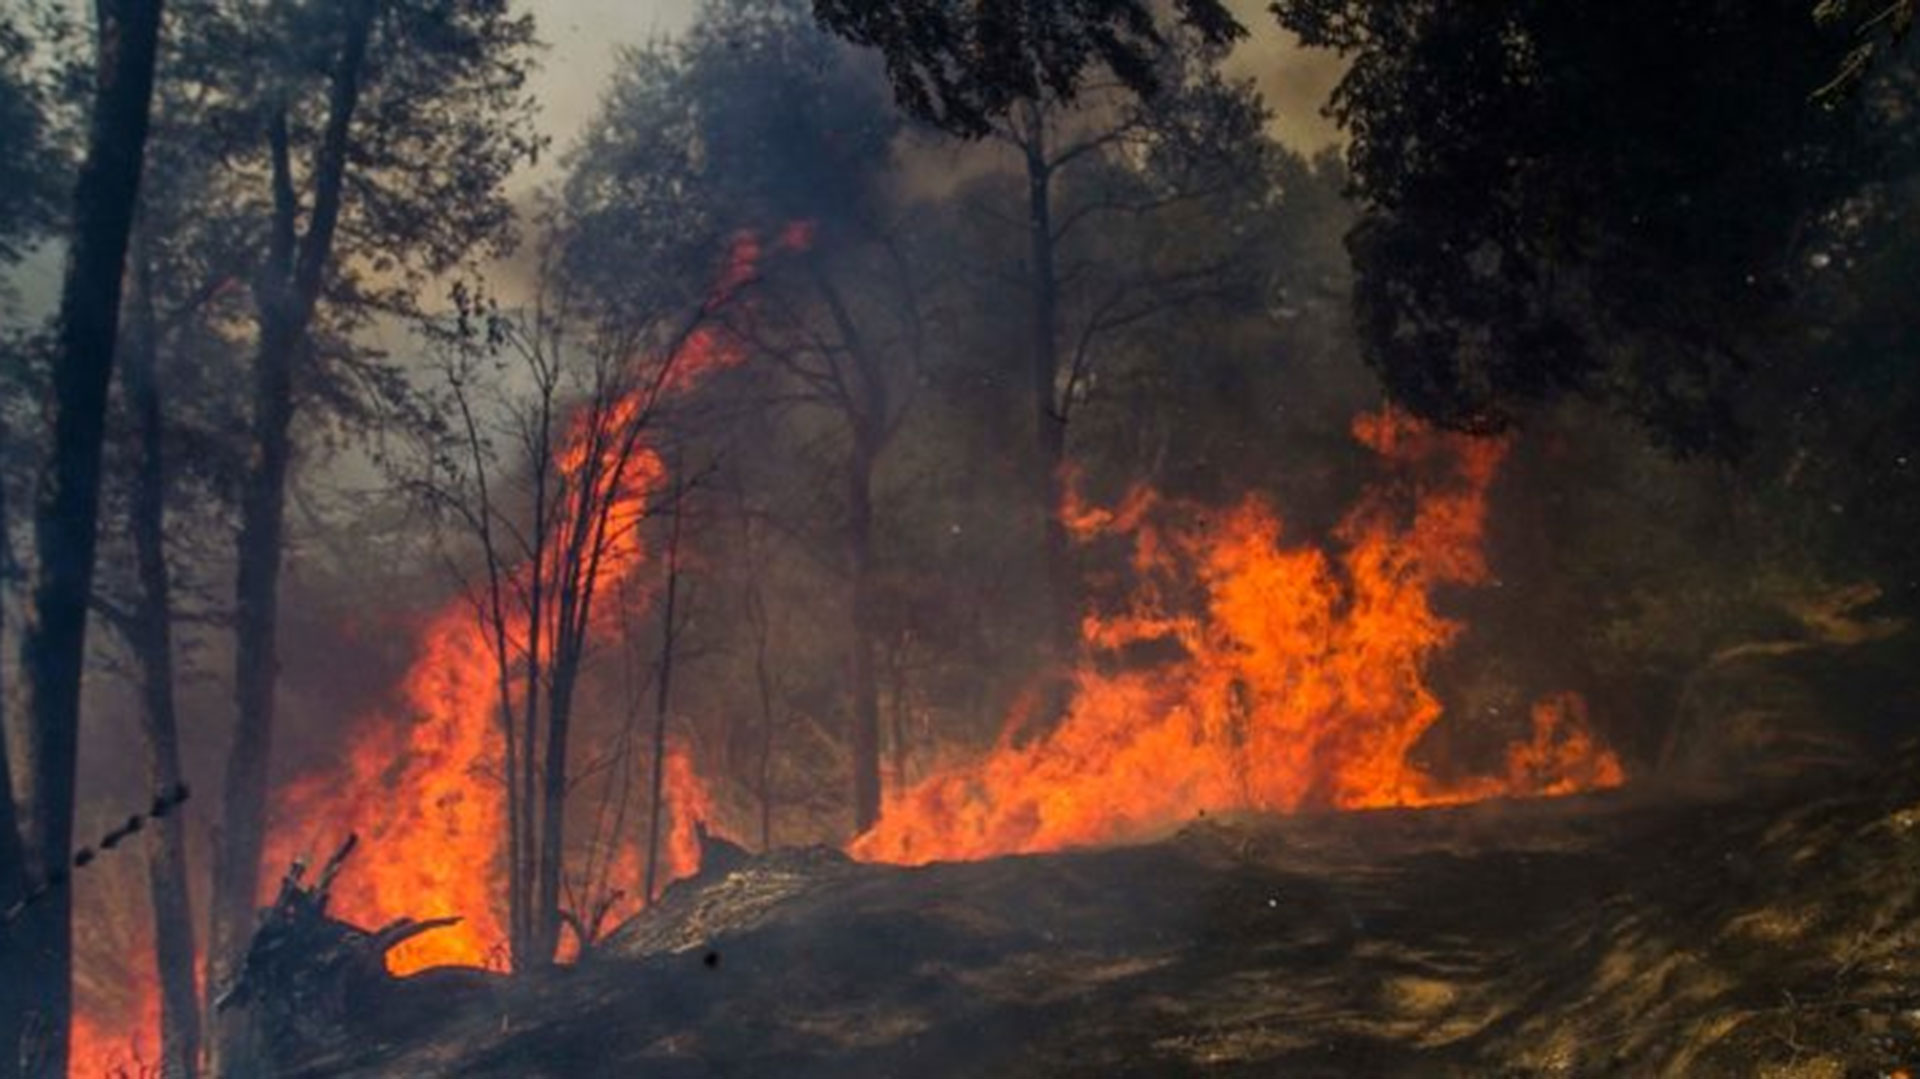 Las pérdidas estimadas por los incendios forestales en el país ascienden a $ 3.850 billones